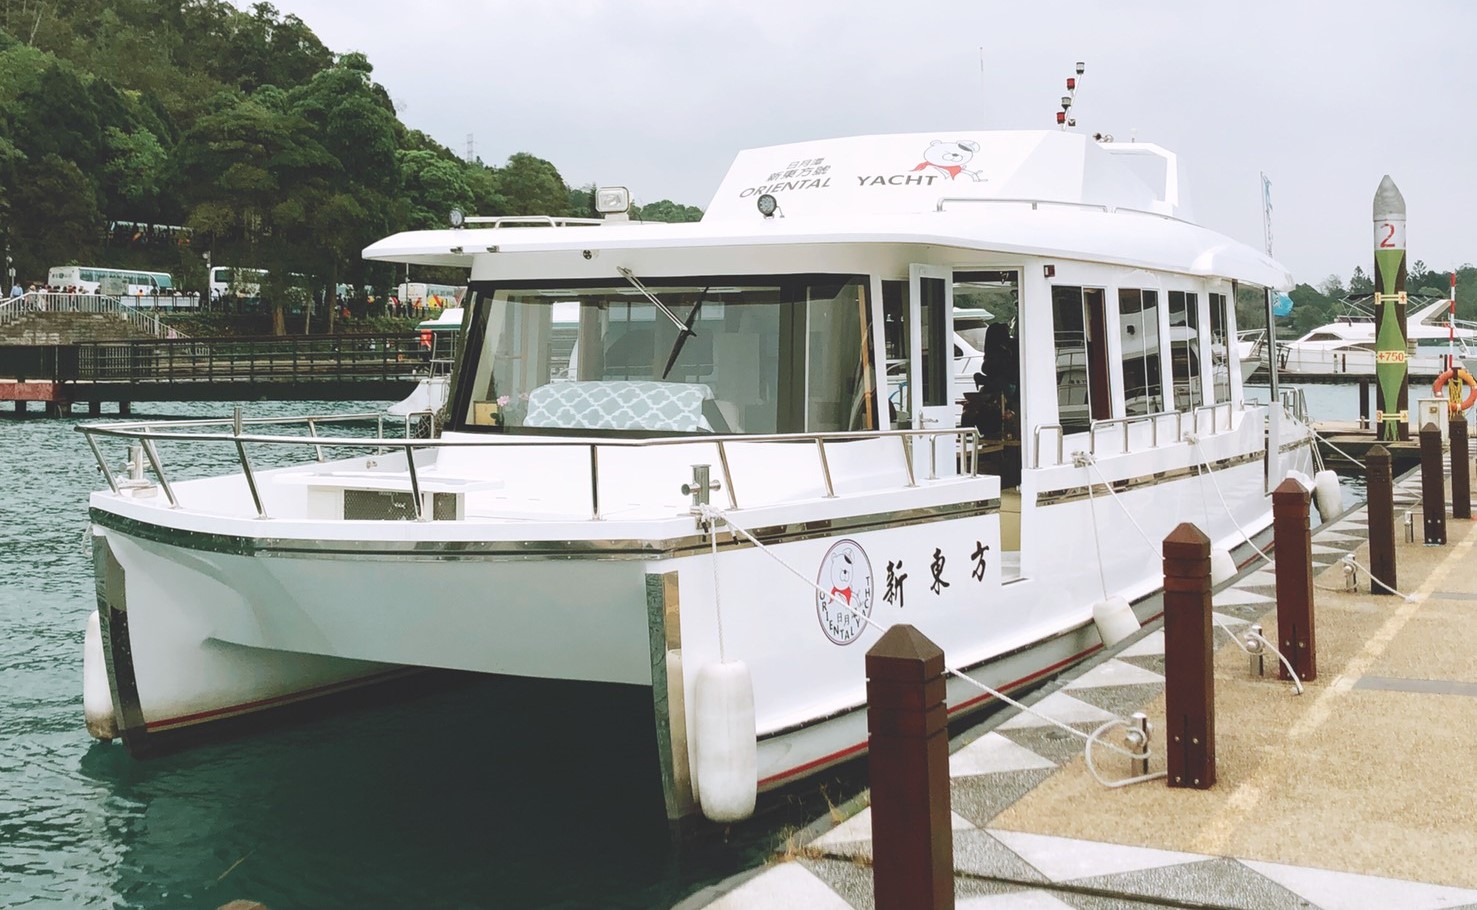 Du thuyền khu du lịch Hồ Nhật Nguyệt chuẩn bị đón khách nhưng nghiêm cấm ăn uống trên thuyền. (Nguồn ảnh:《自由時報》)